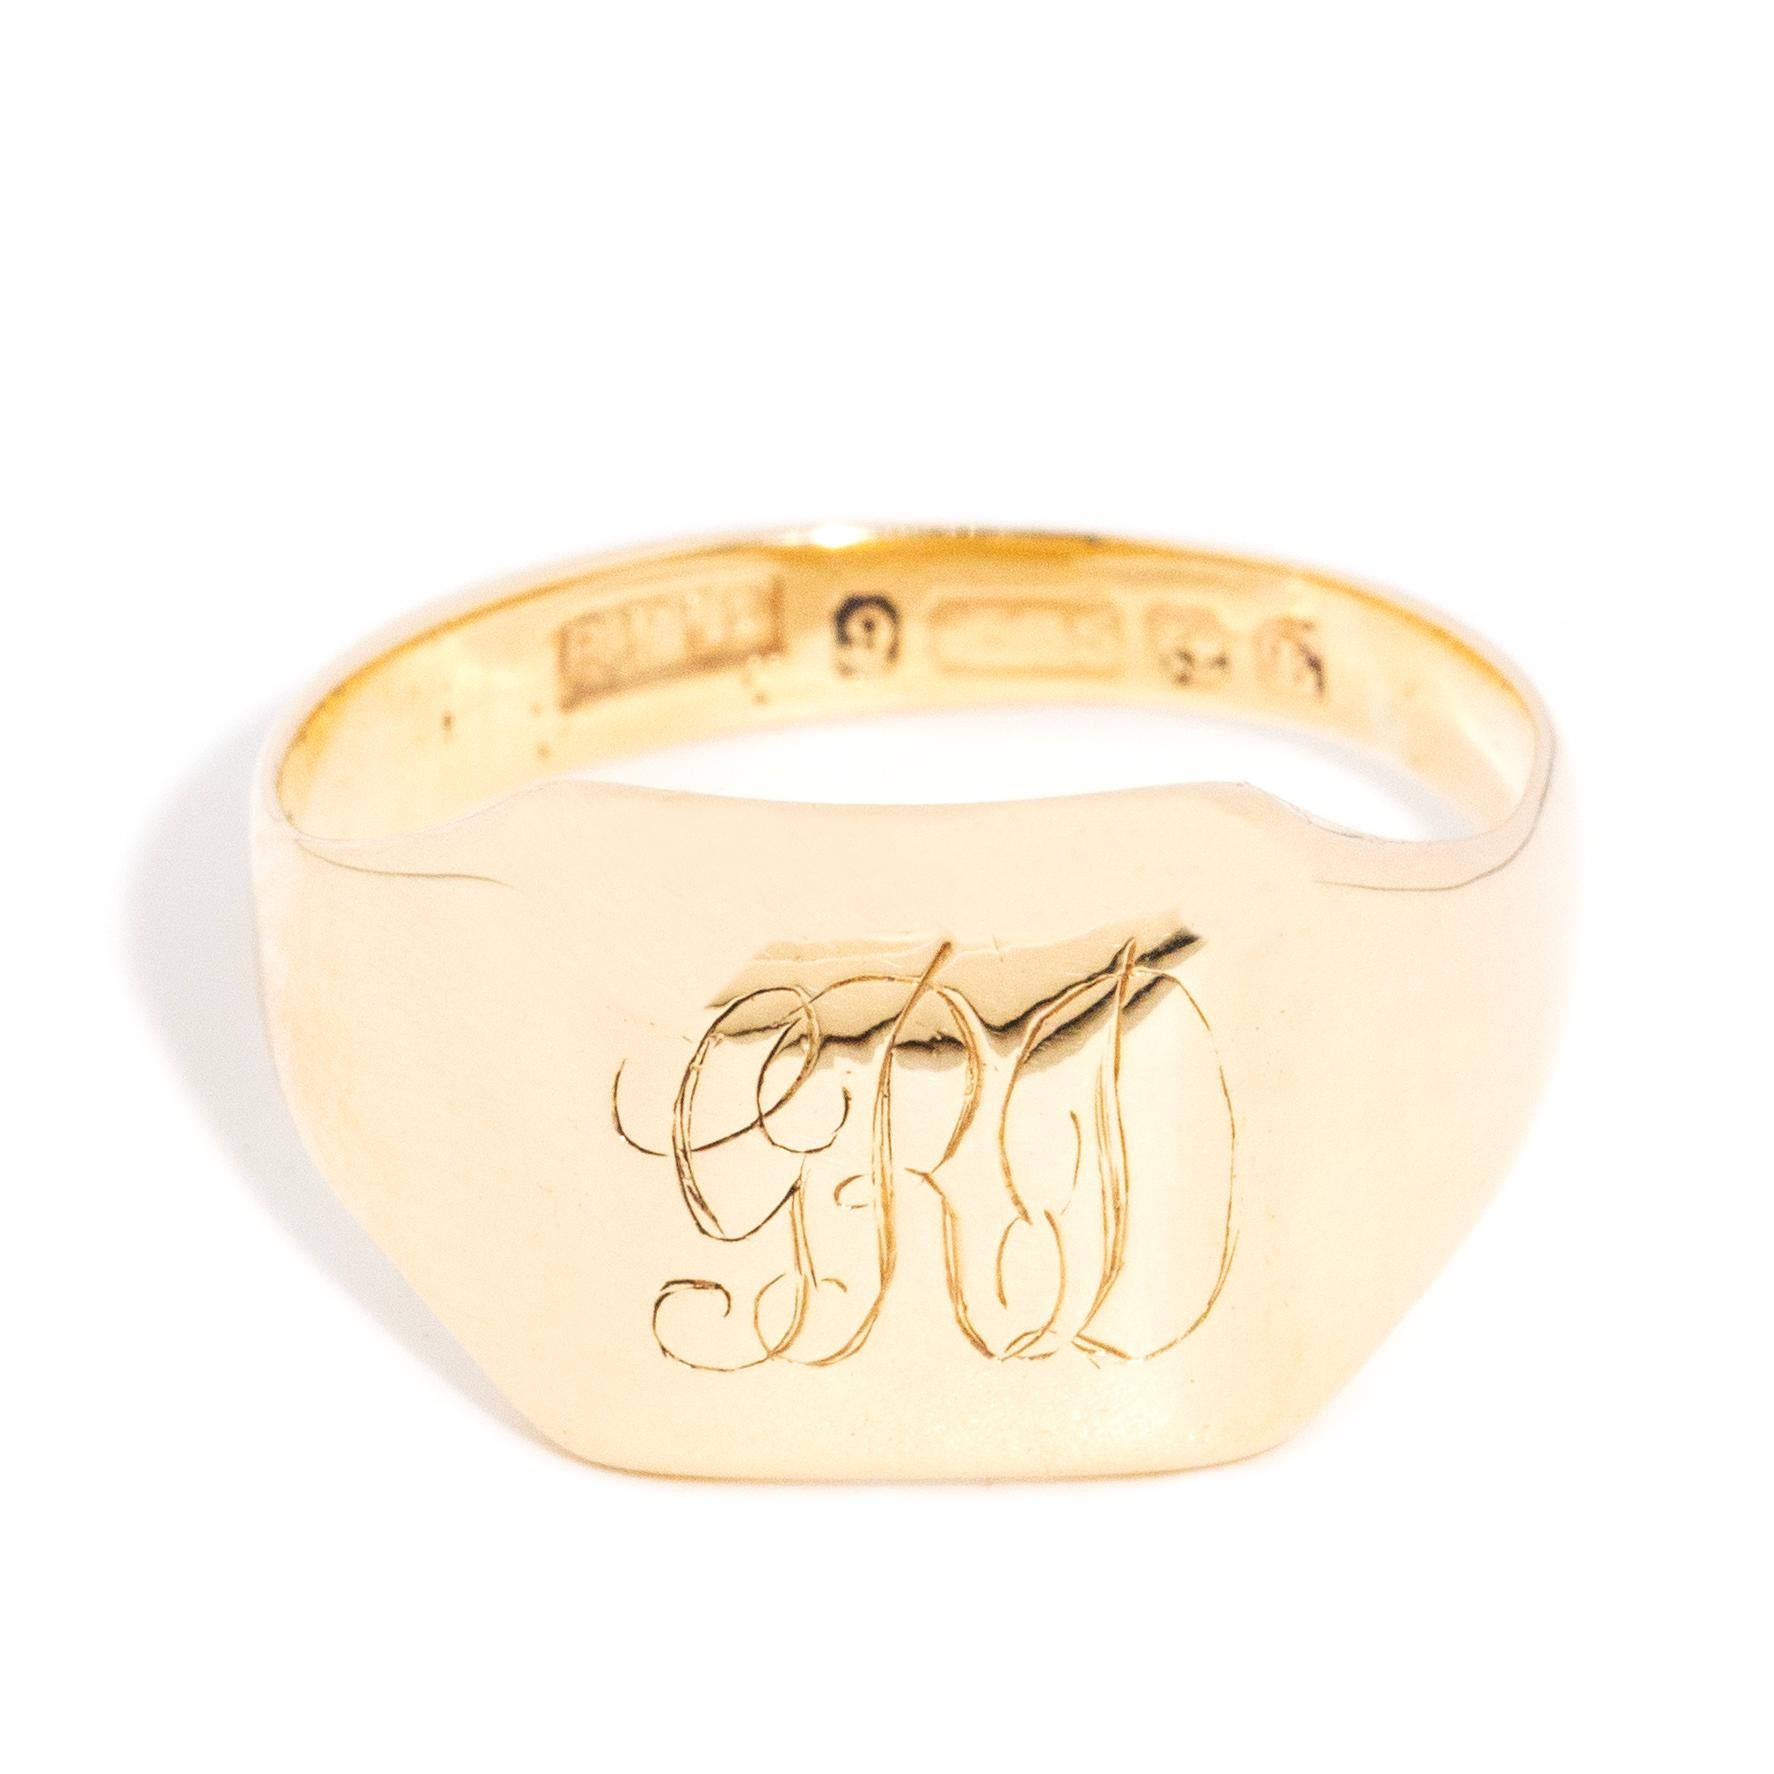 Der aus 9 Karat Gold gefertigte Ring Gerald hat eine subtile Präsenz.  Ein gepolsterter Deckel mit leichter Gravur ist eine Erinnerung an ein längst vergangenes Leben.  Jetzt ist die Zeit für neue Geschichten, neue Familien und ein neues